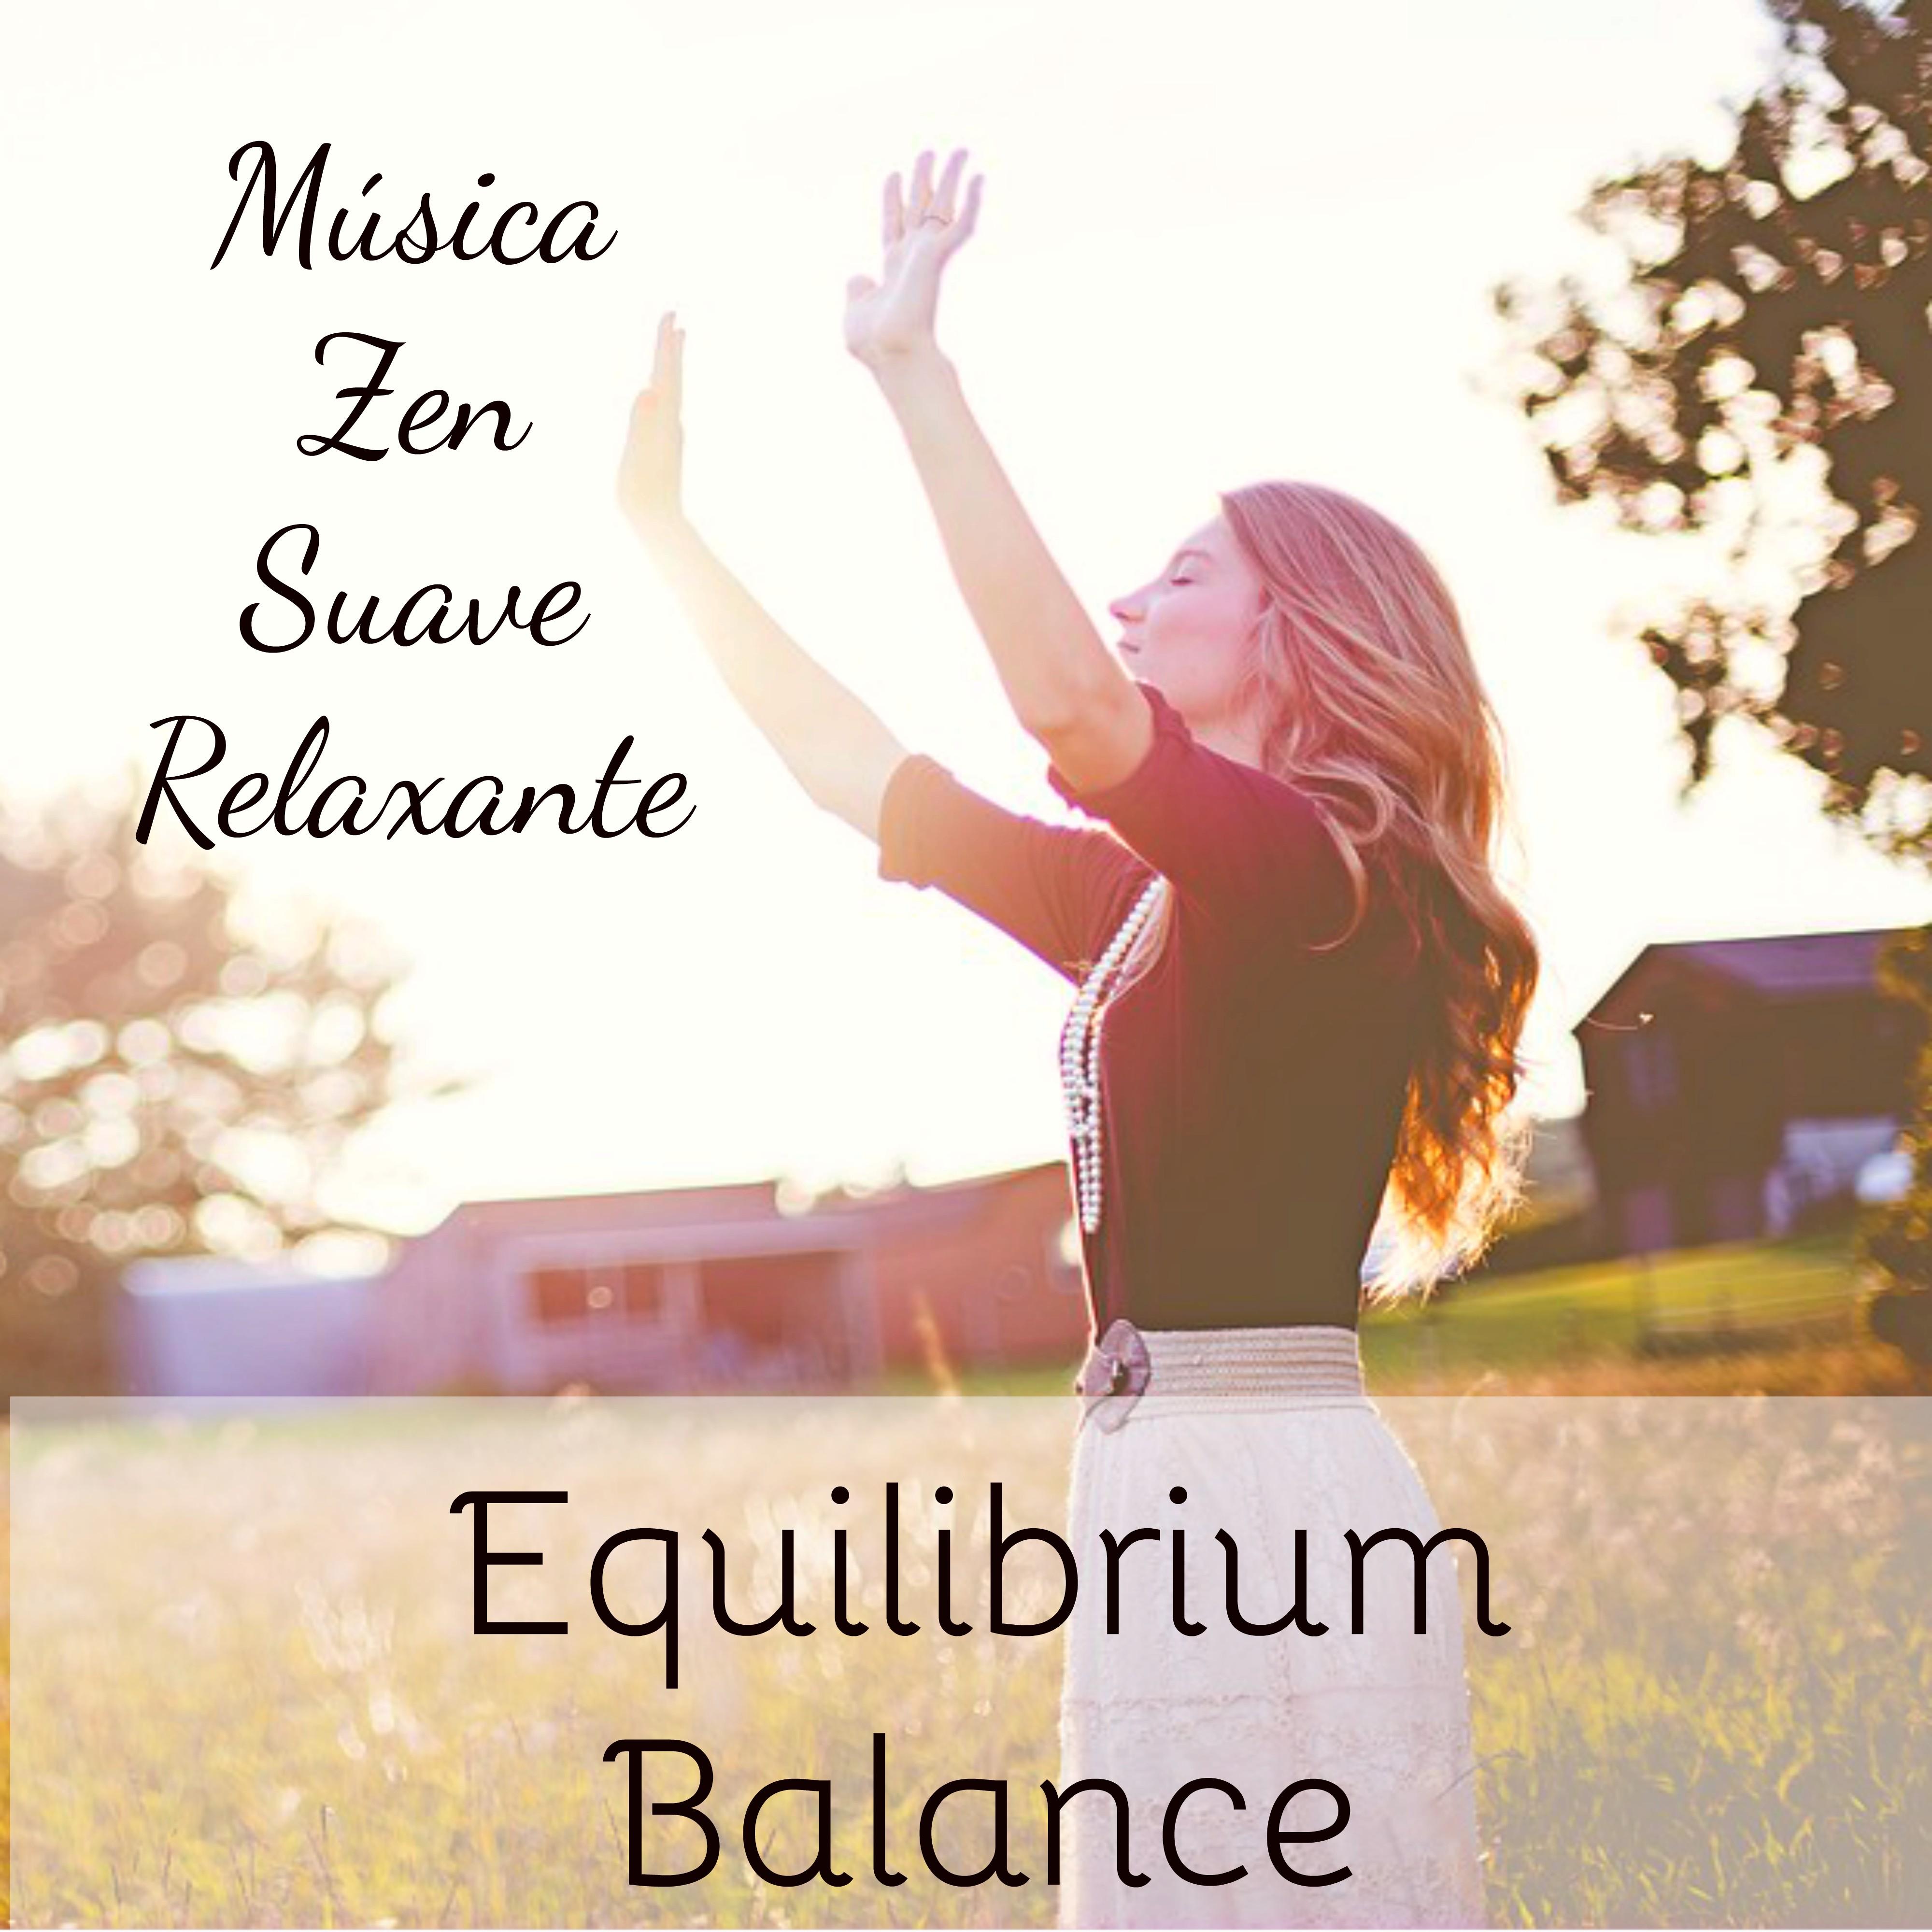 Equilibrium Balance - Música Zen Suave Relaxante de Meditação Binaural para Estudar Sono Profundo Energia Reiki com Sons da Natureza New Age Instrumentais